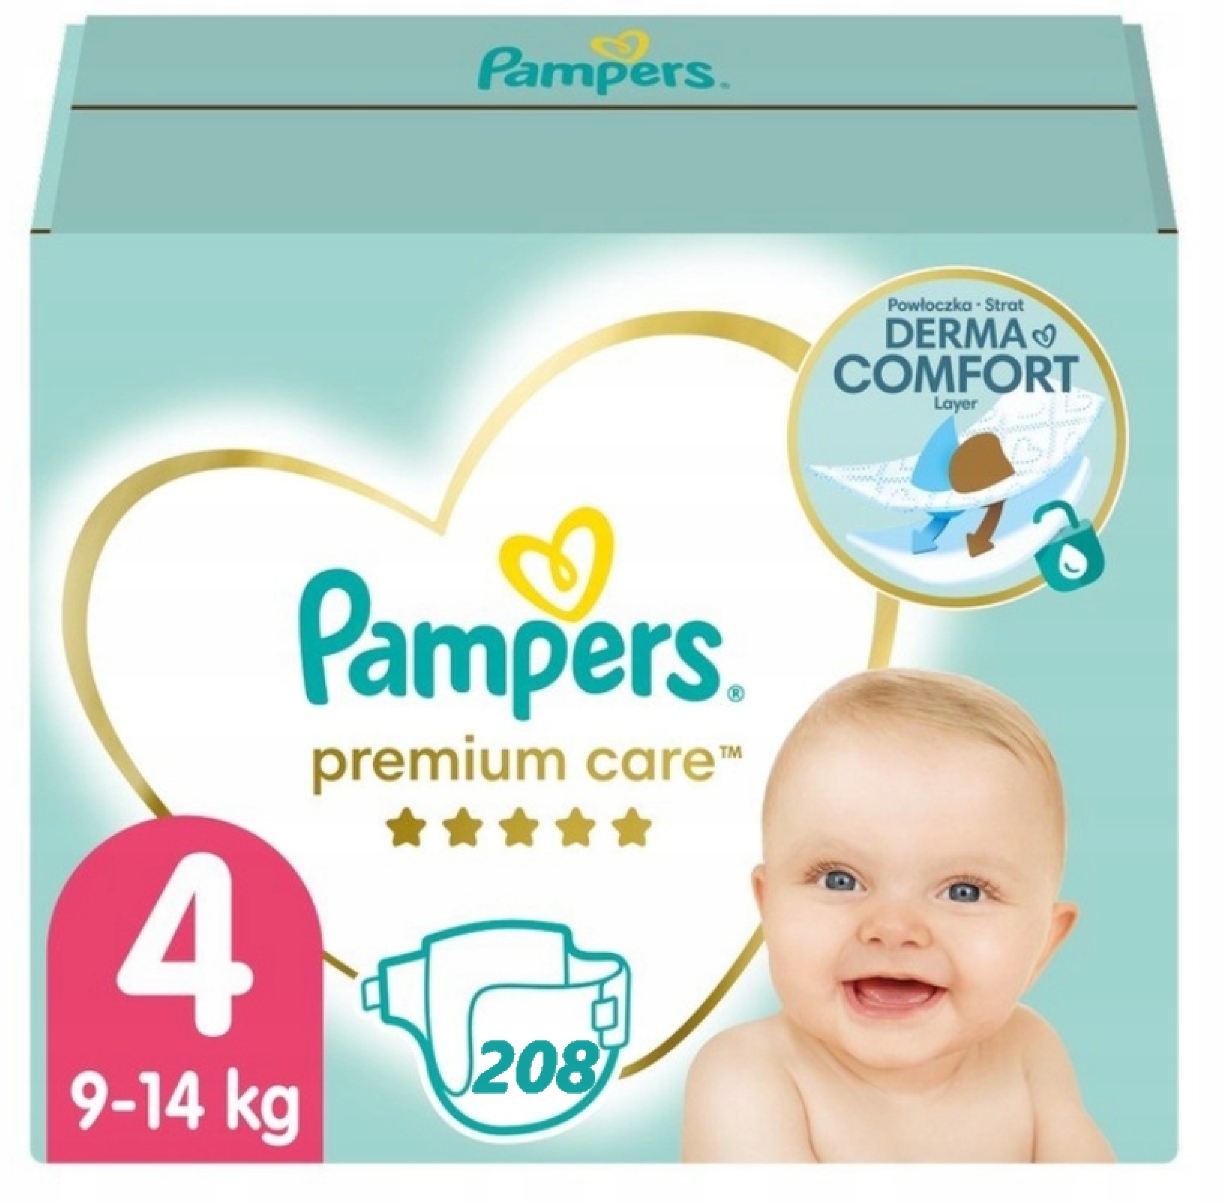 pampers premium care 4+ site allegro.pl